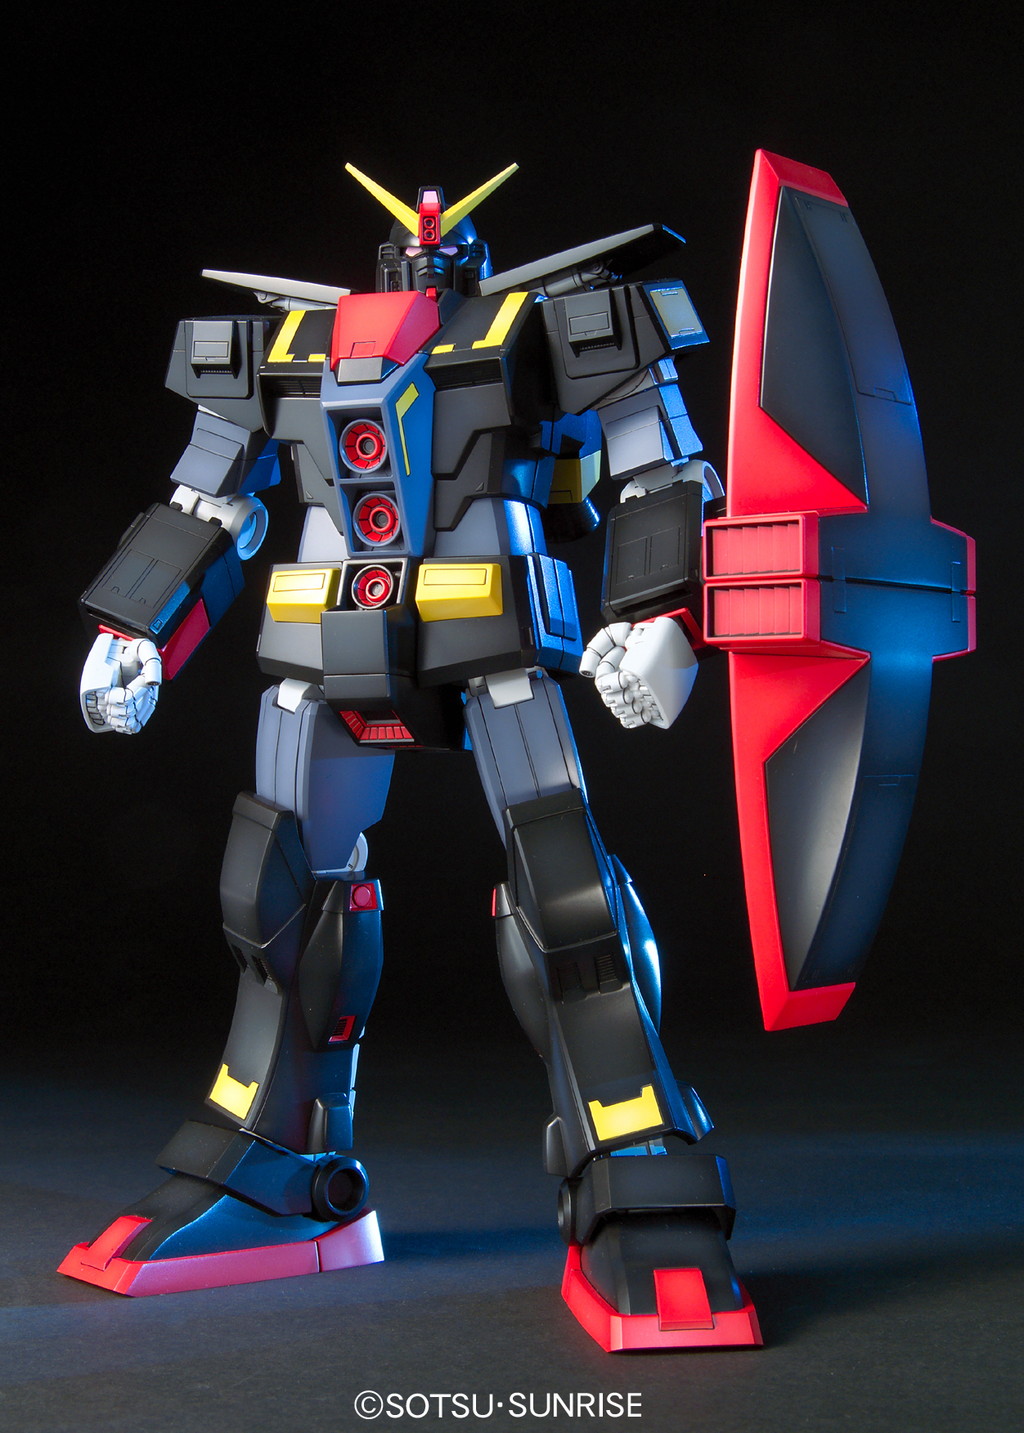 MRX-009 サイコガンダム [Psycho Gundam]